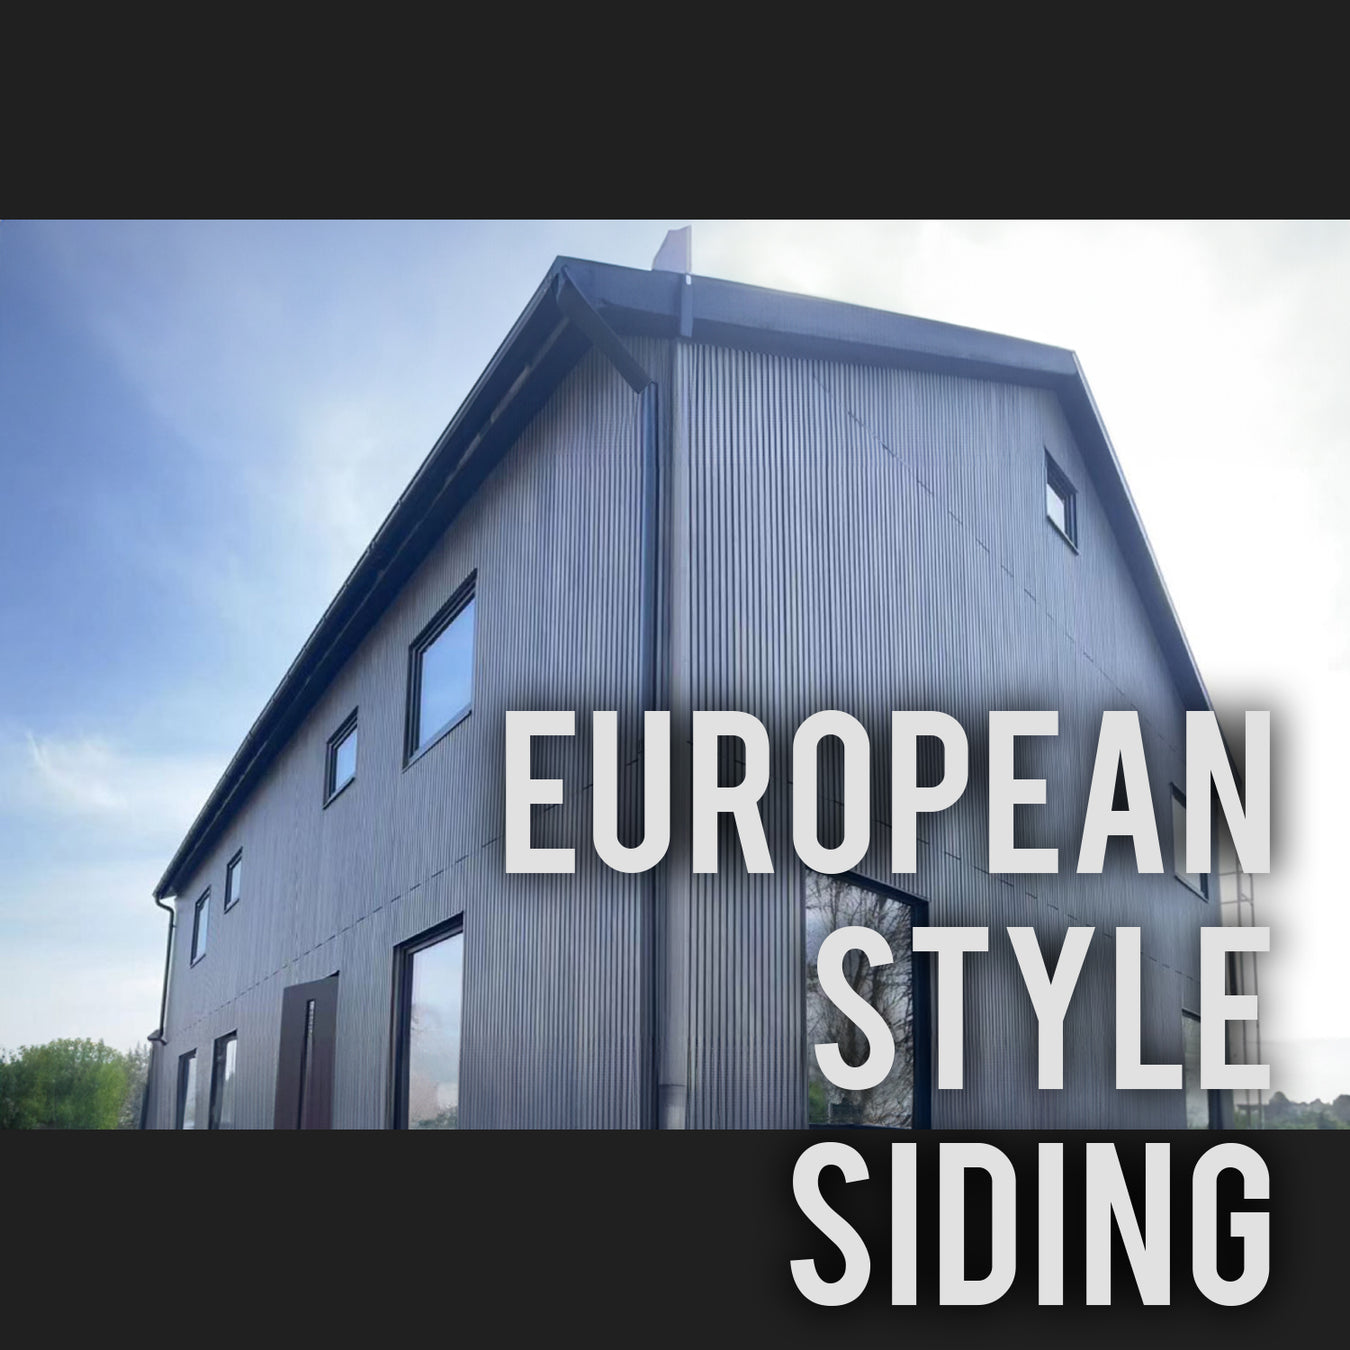 European Style Siding